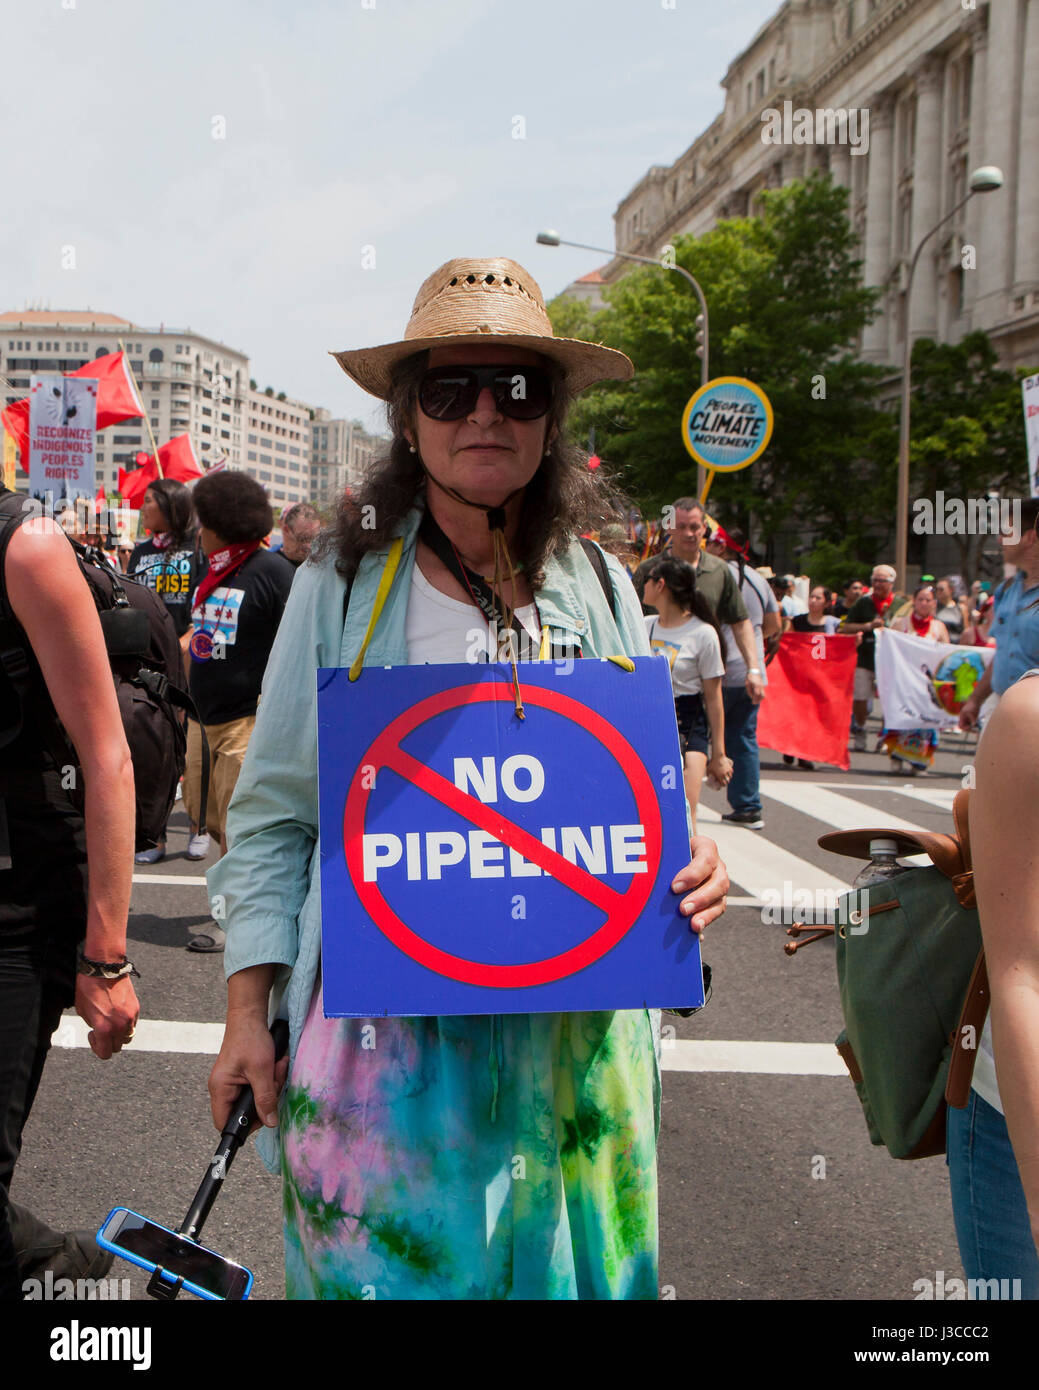 2017 persone il clima di marzo (donna tenendo premuto 'n' Pipeline segno, riferendosi a Keystone XL pipeline) - Washington DC, Stati Uniti d'America Foto Stock